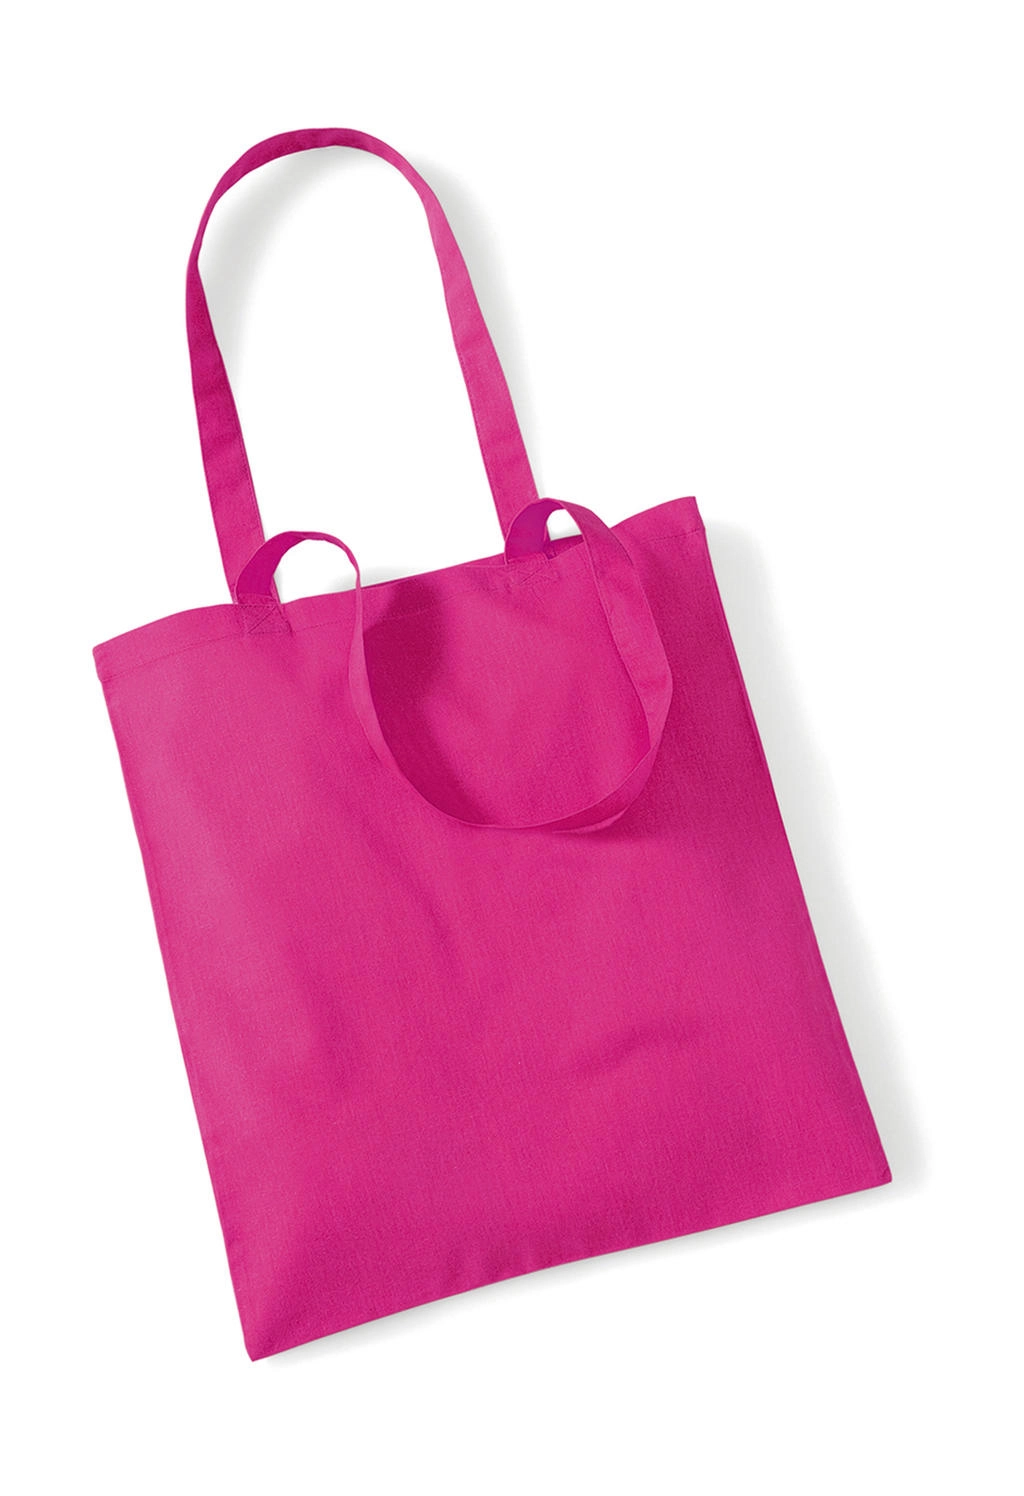 Bag for Life - Long Handles zum Besticken und Bedrucken in der Farbe Fuchsia mit Ihren Logo, Schriftzug oder Motiv.